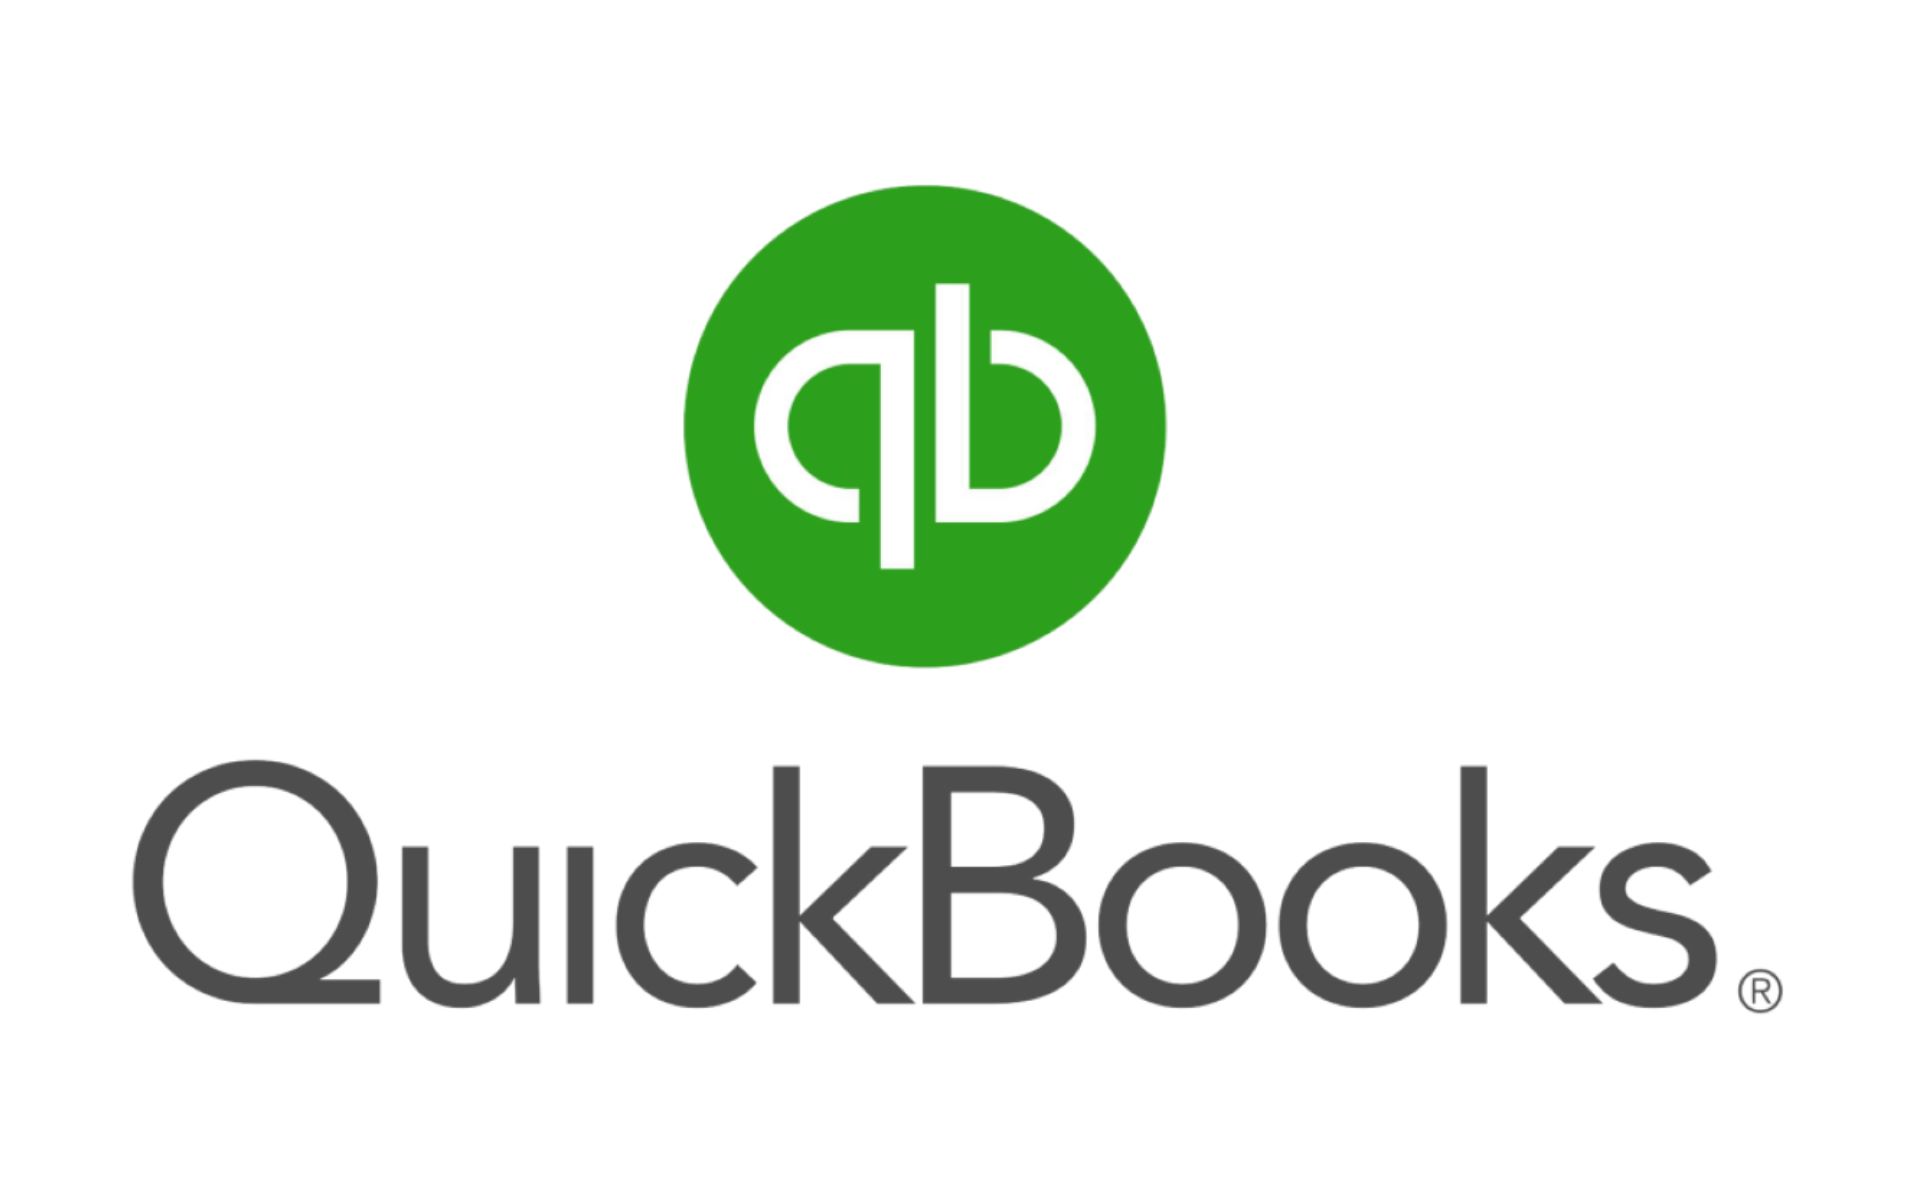 How To Use Quickbooks 2016